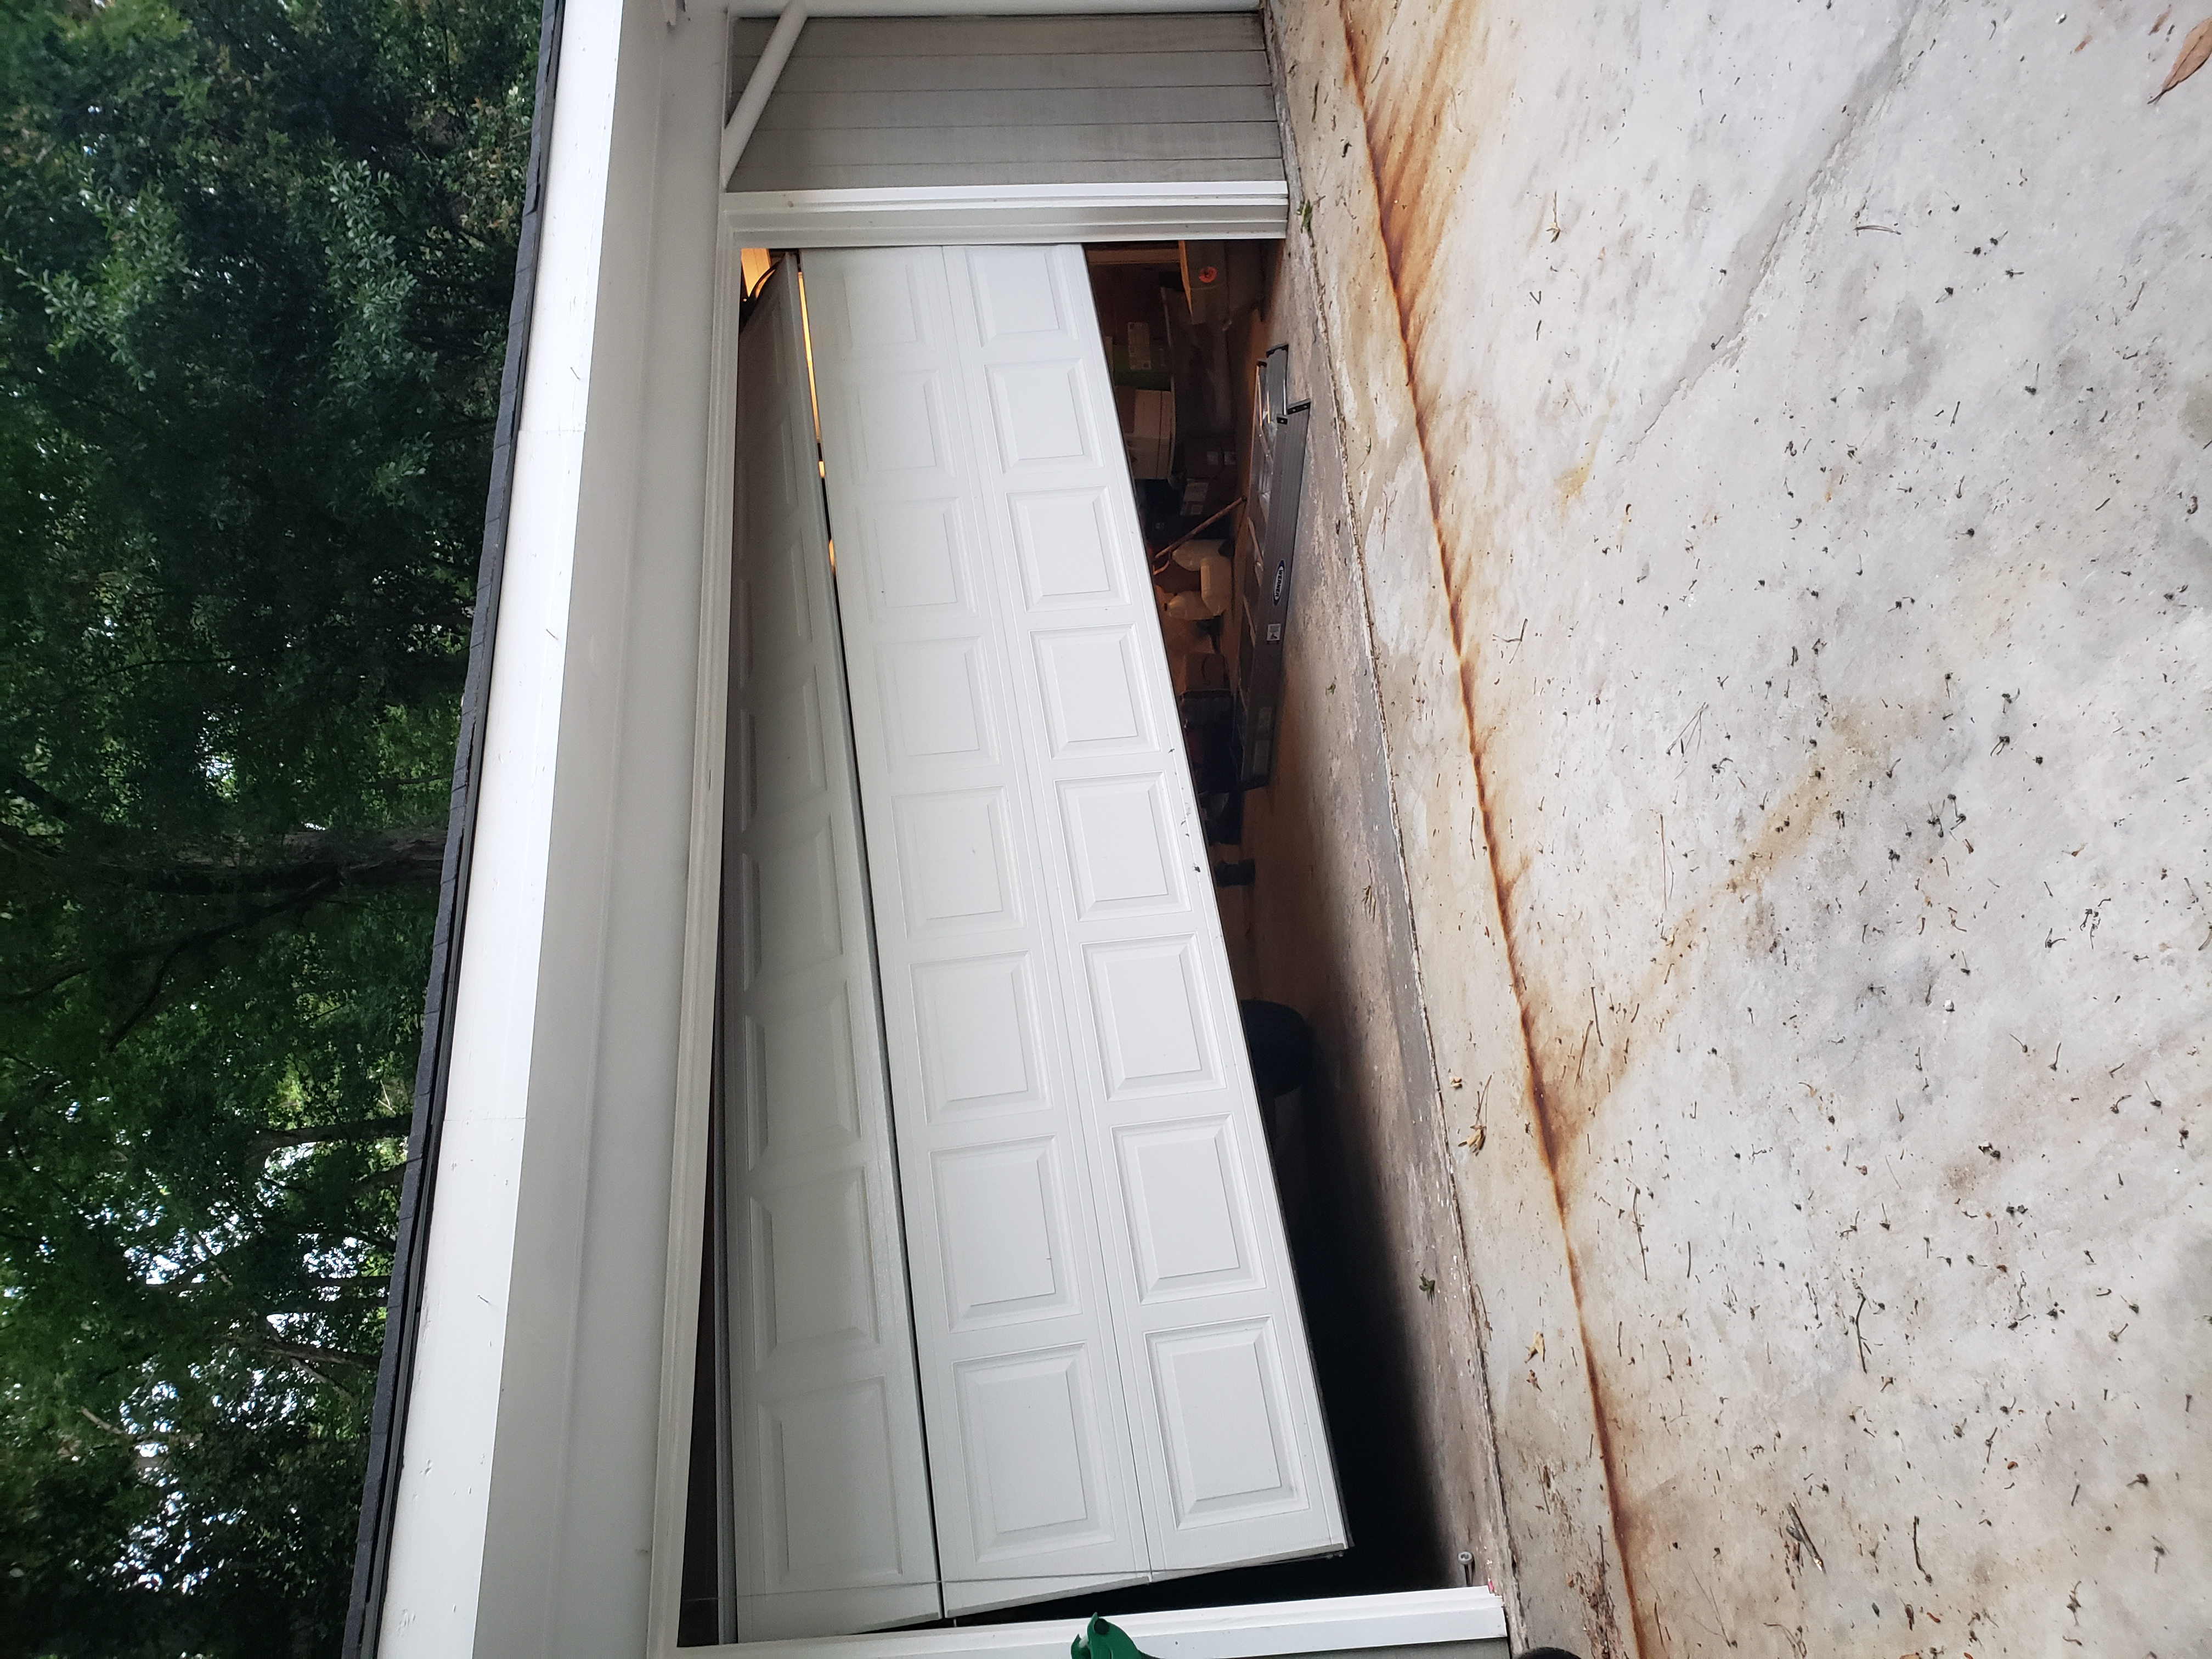 If you need a garage door repair service in minneapolis you should call lifetime garage door repair